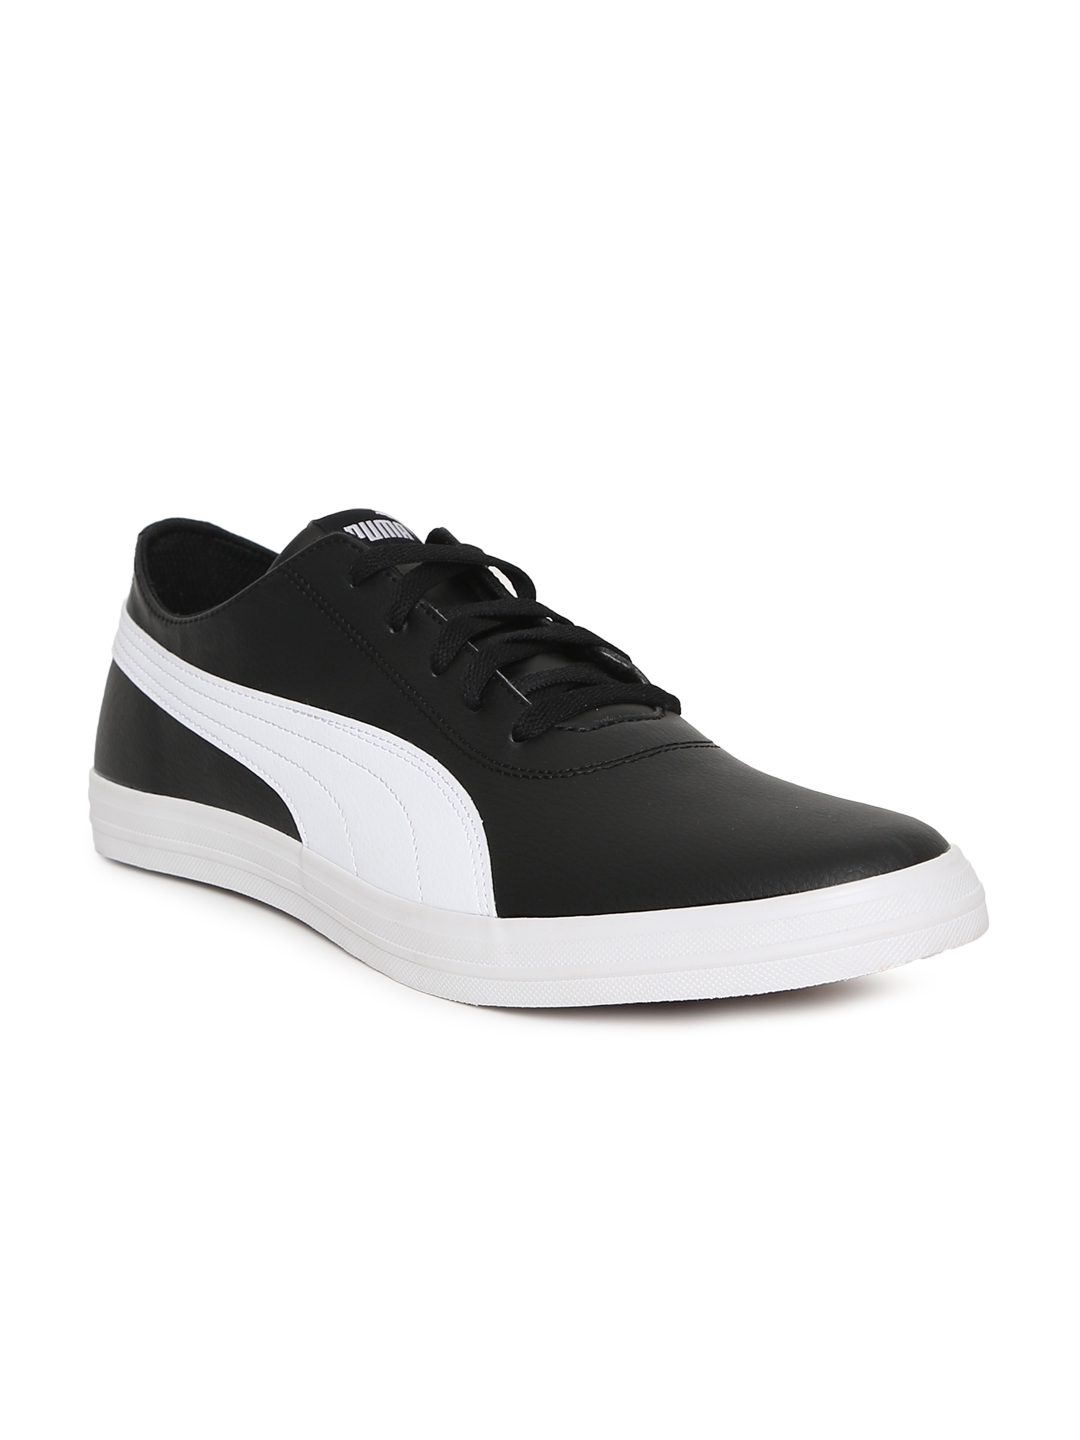 Buy Puma Men Black Urban SL Sneakers - Casual Shoes for Men 2429630 ...